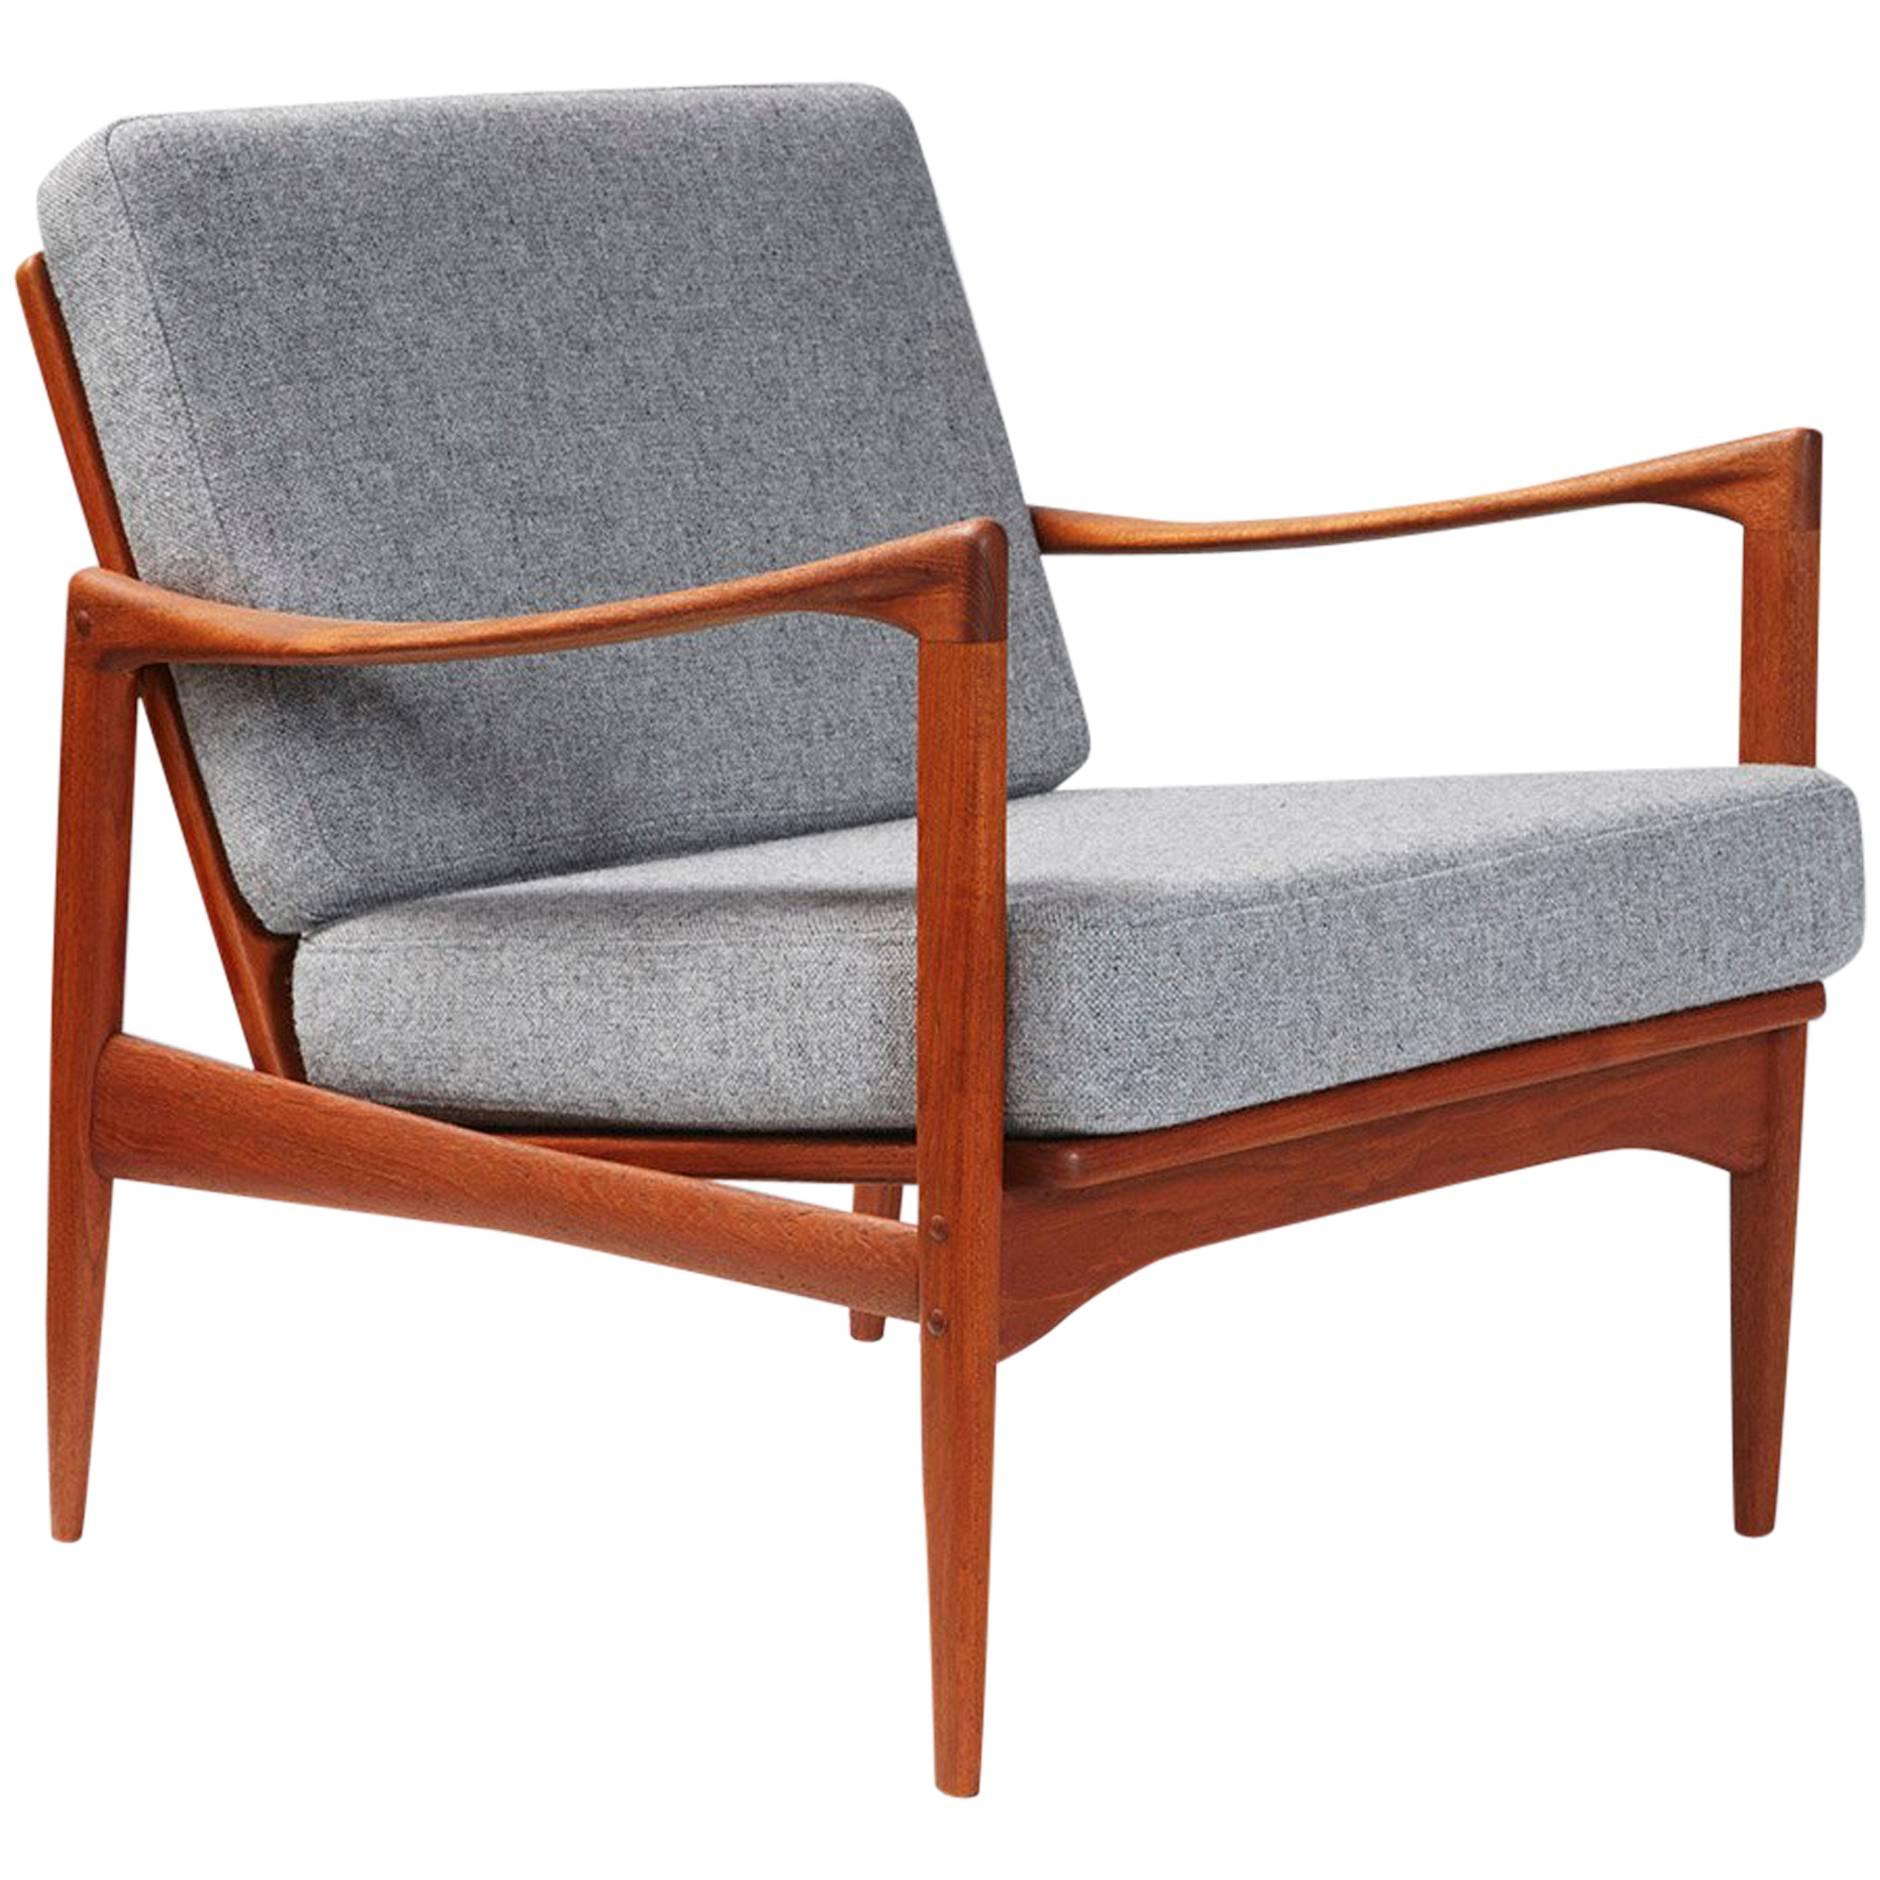 Ib Kofod-Larsen 'Candidate' Teak Lounge Chair, circa 1960